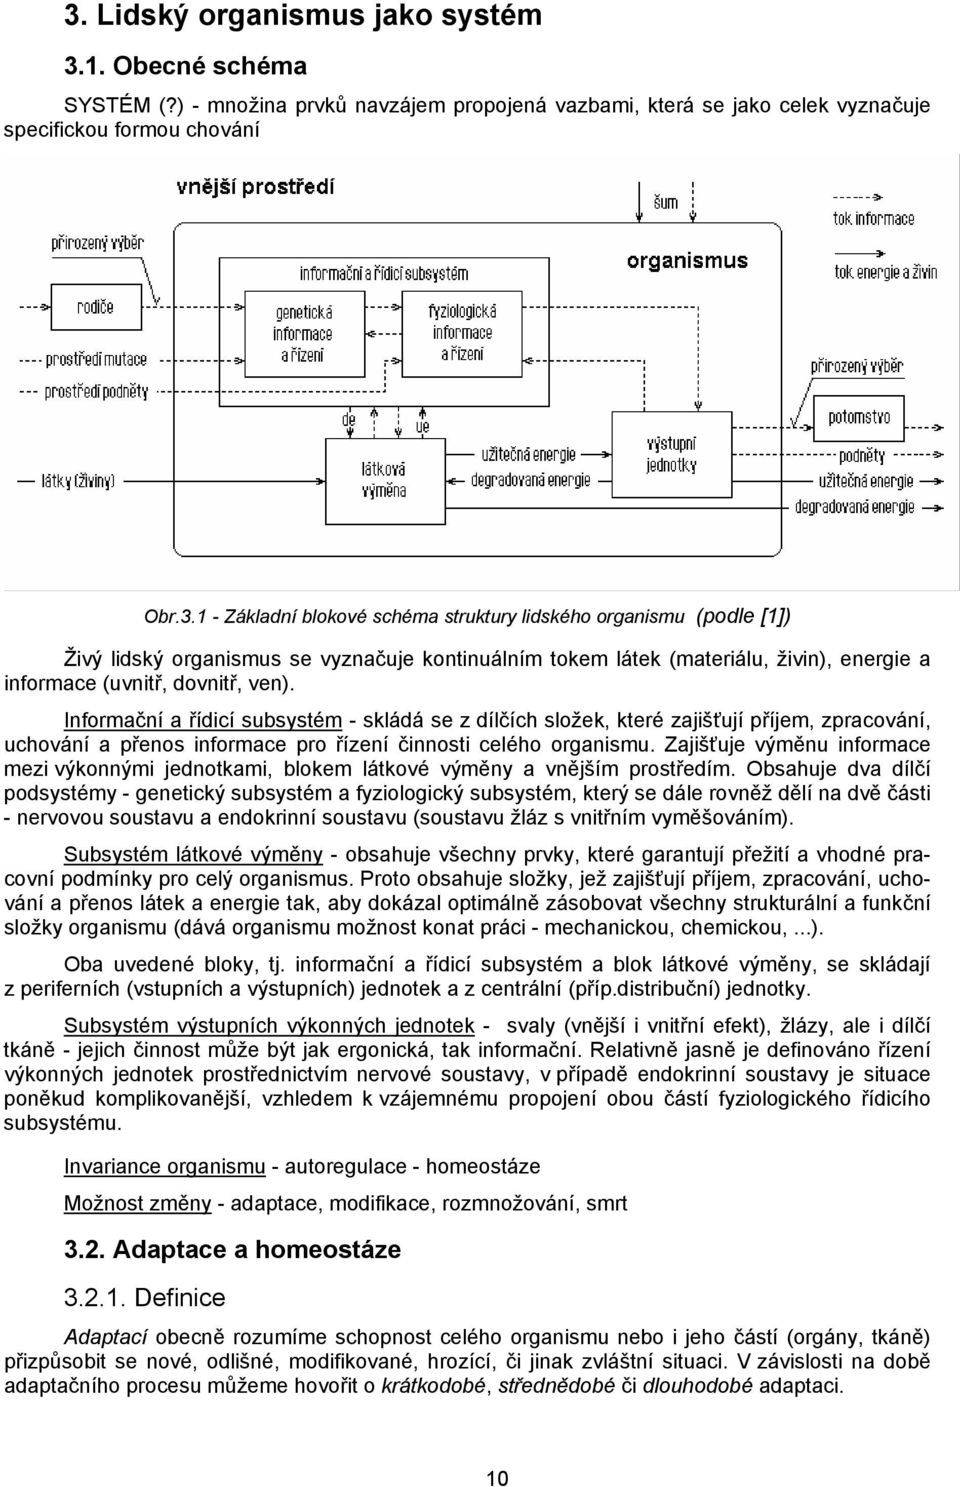 3. Lidský organismus jako systém - PDF Stažení zdarma